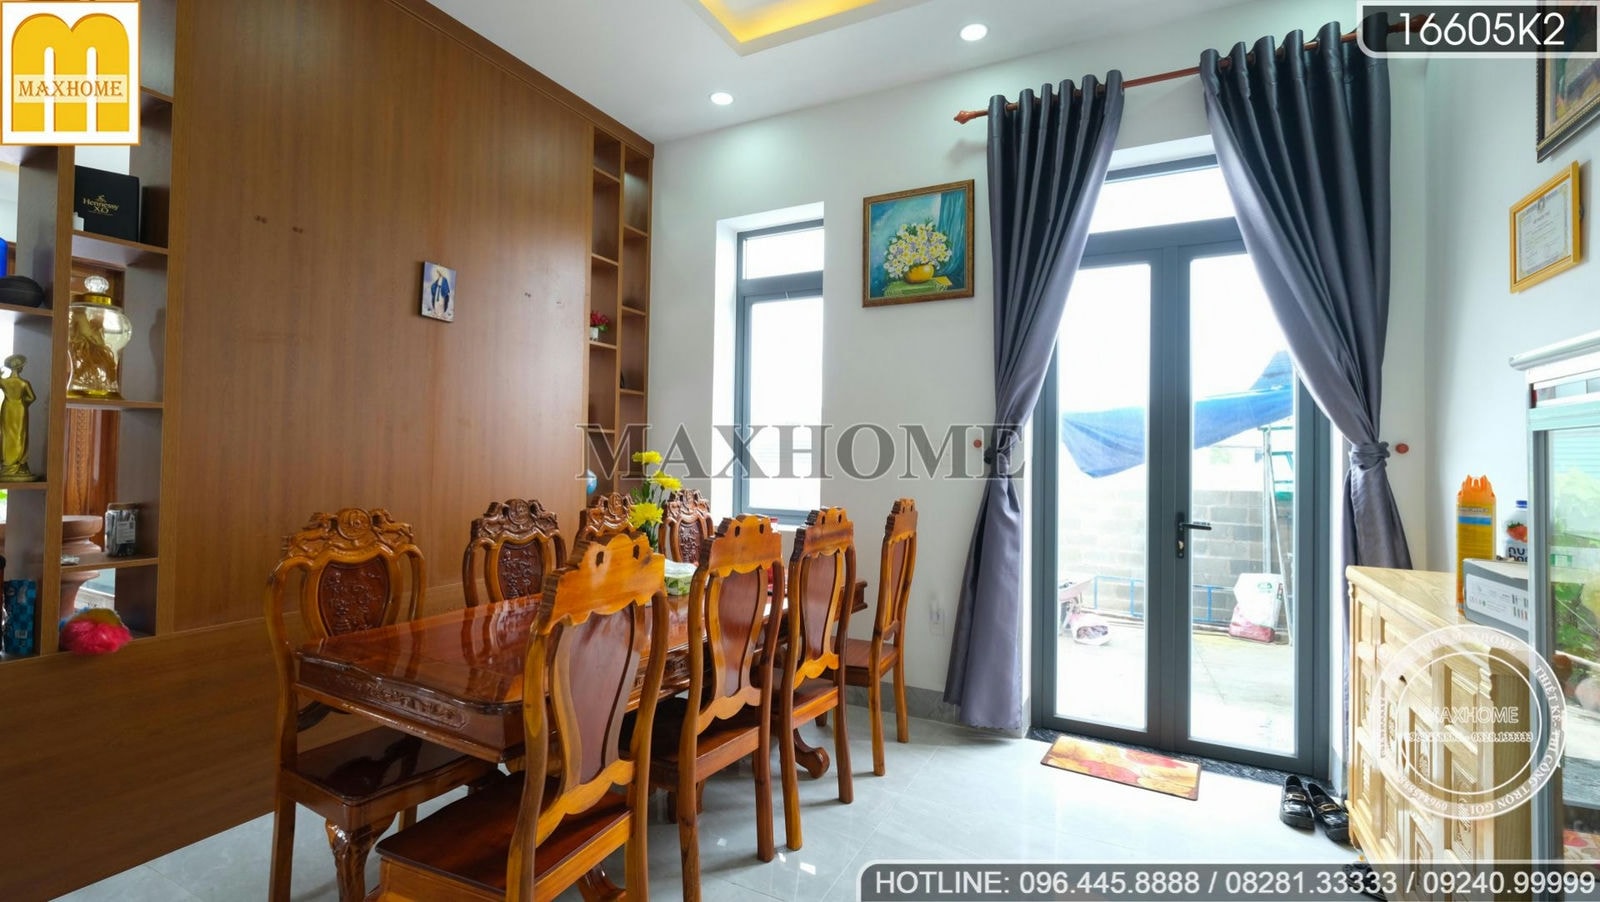 Tham quan bộ nội thất siêu đẹp tiện nghi do Maxhome thi công tại Bình Thuận